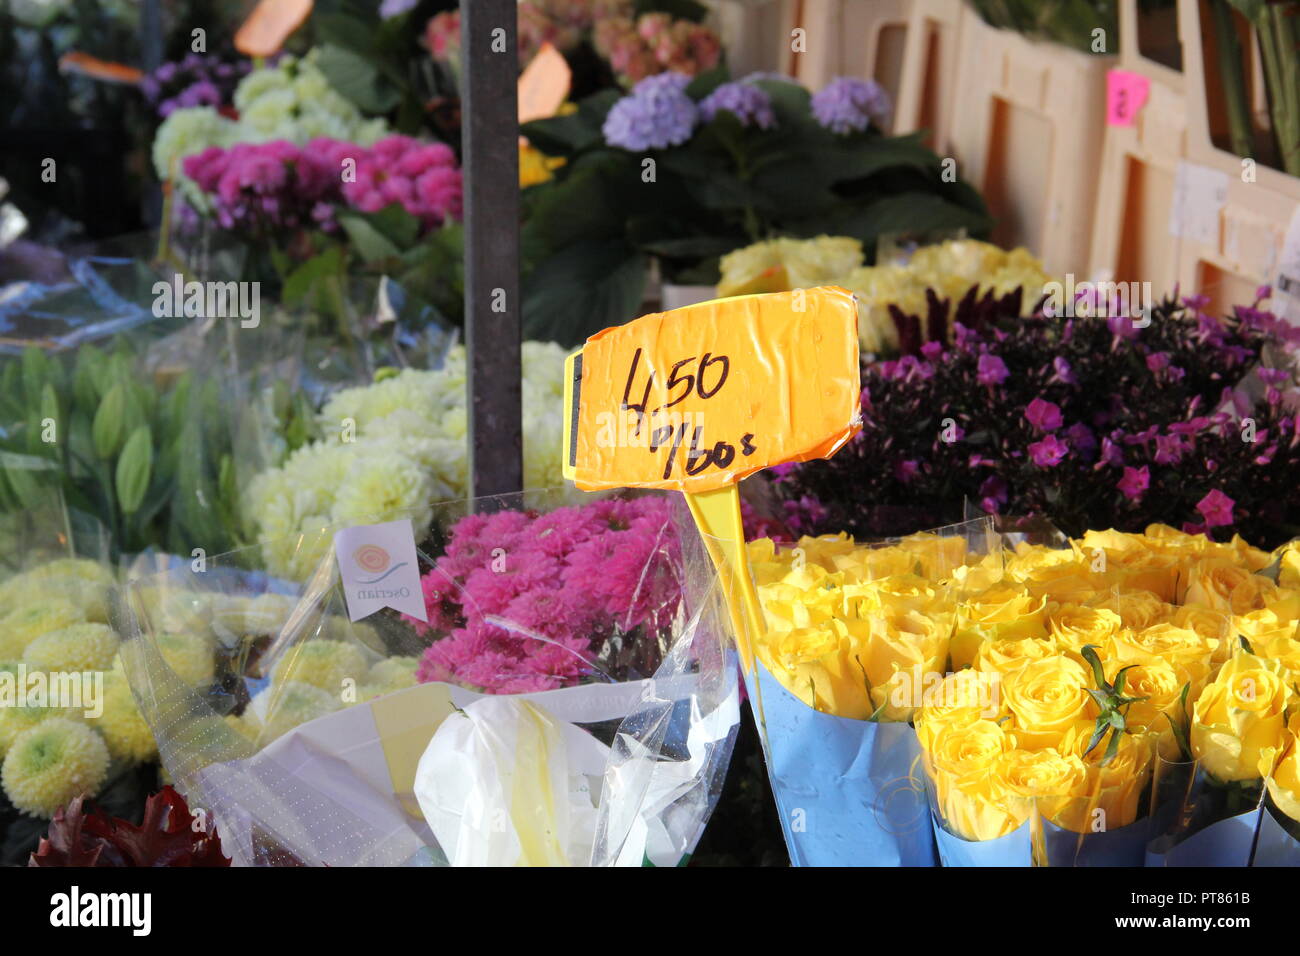 Flowers on sale in flower market Stock Photo